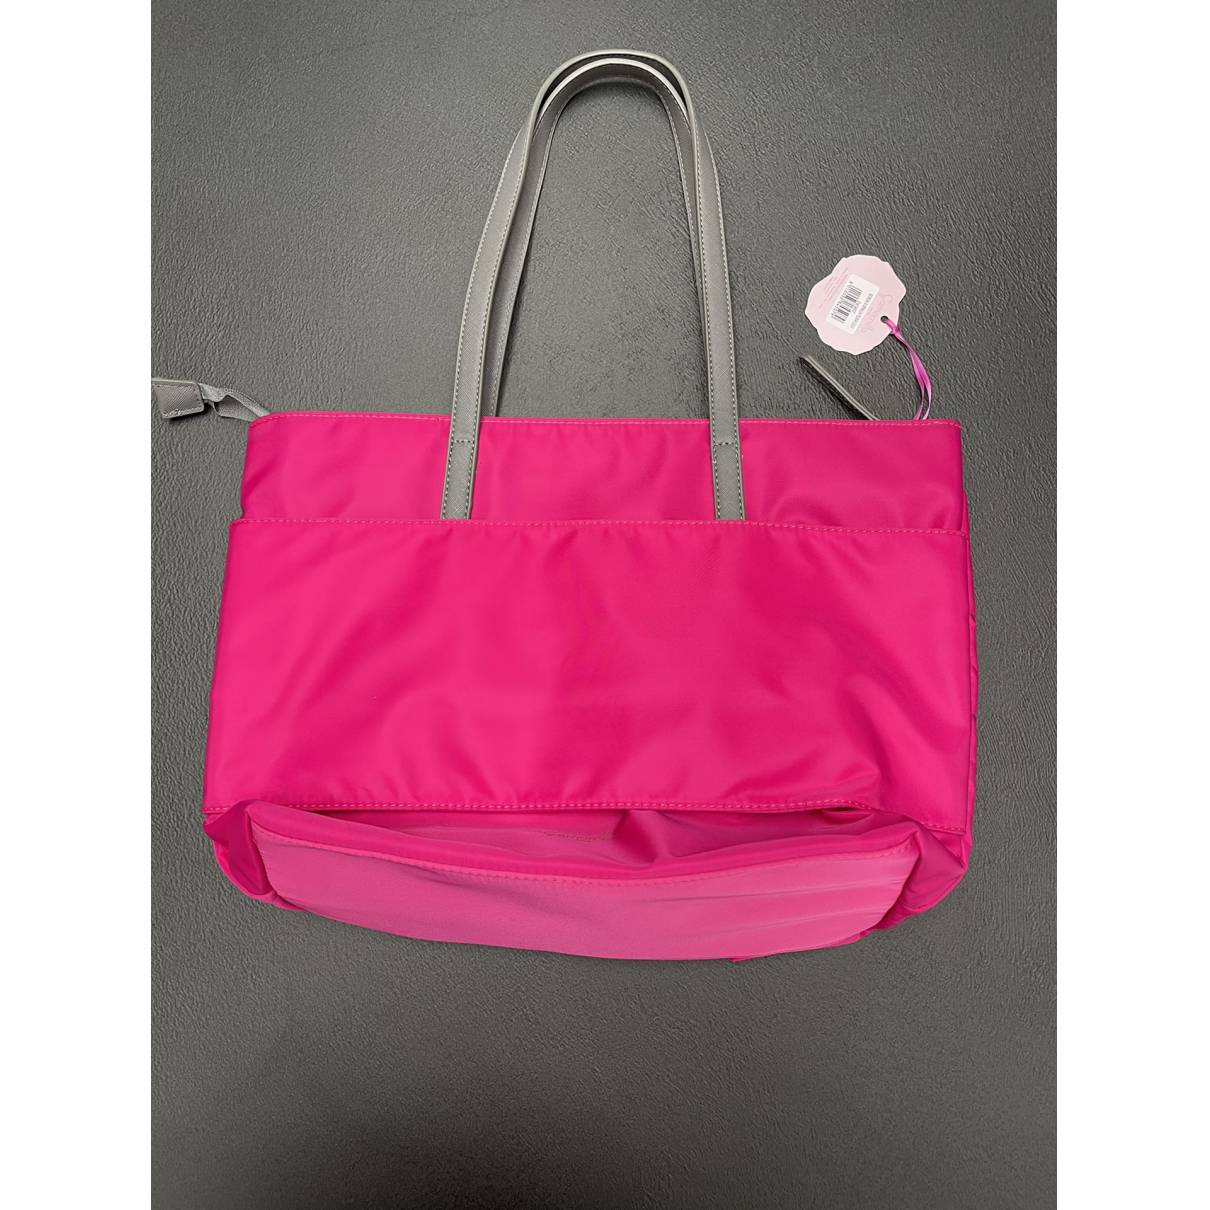 Buy CAMOMILLA Cloth handbag online